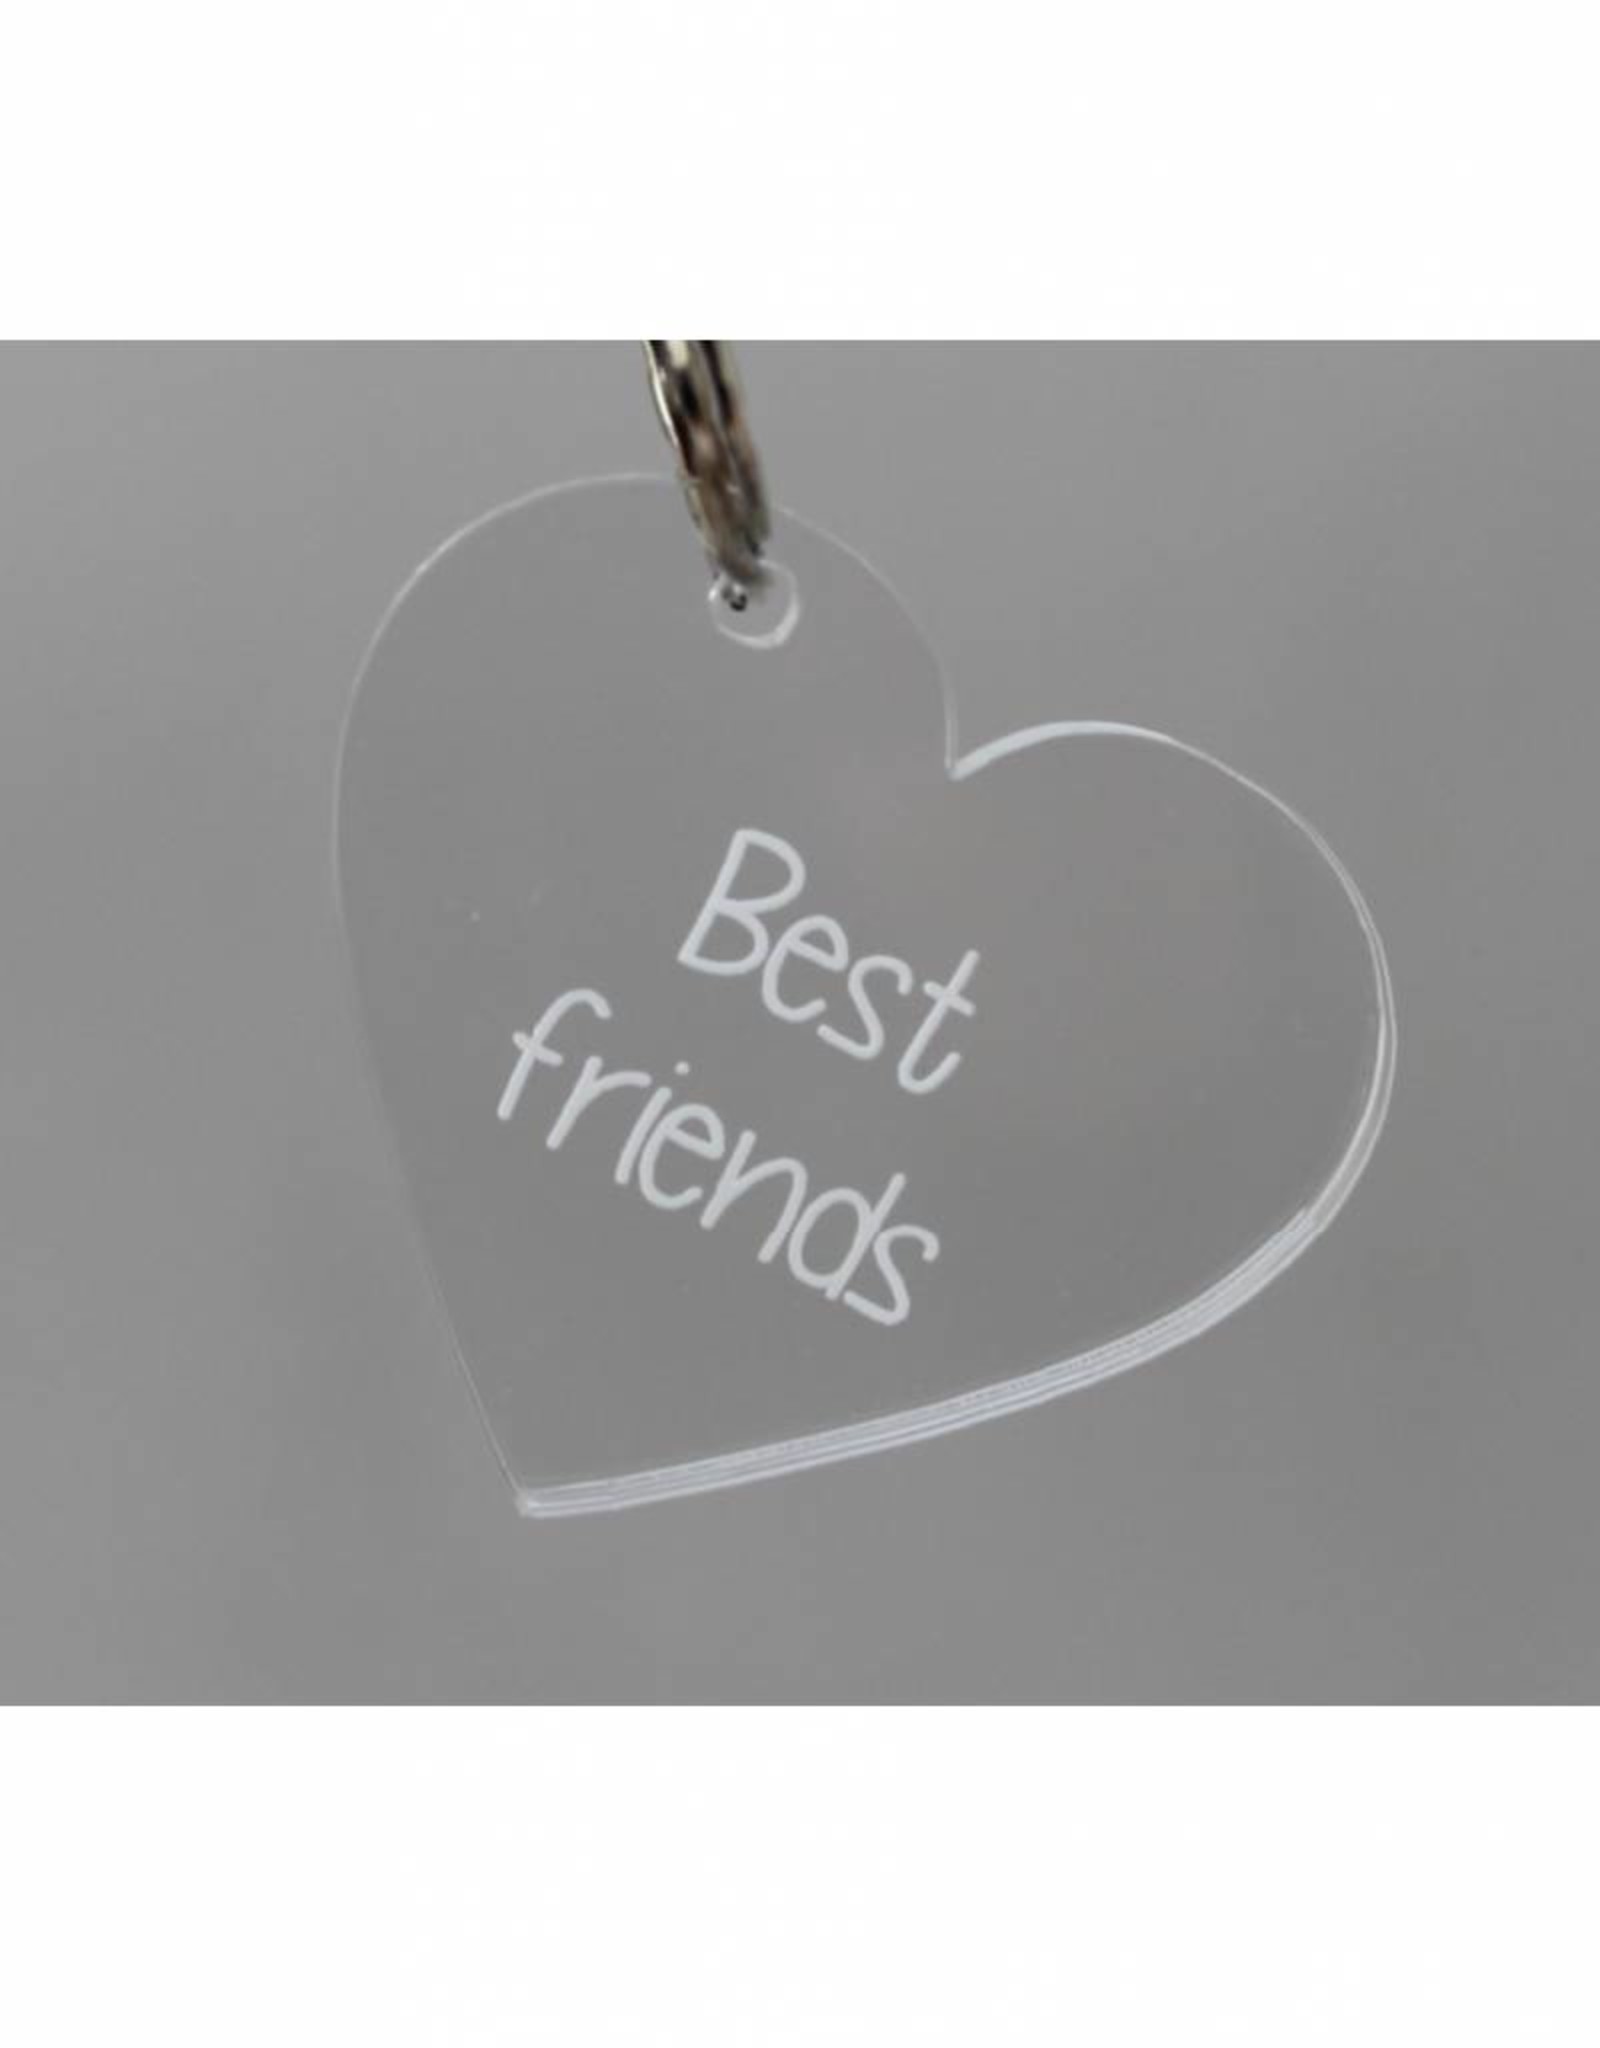 Sleutelhanger hartje "Best friends"